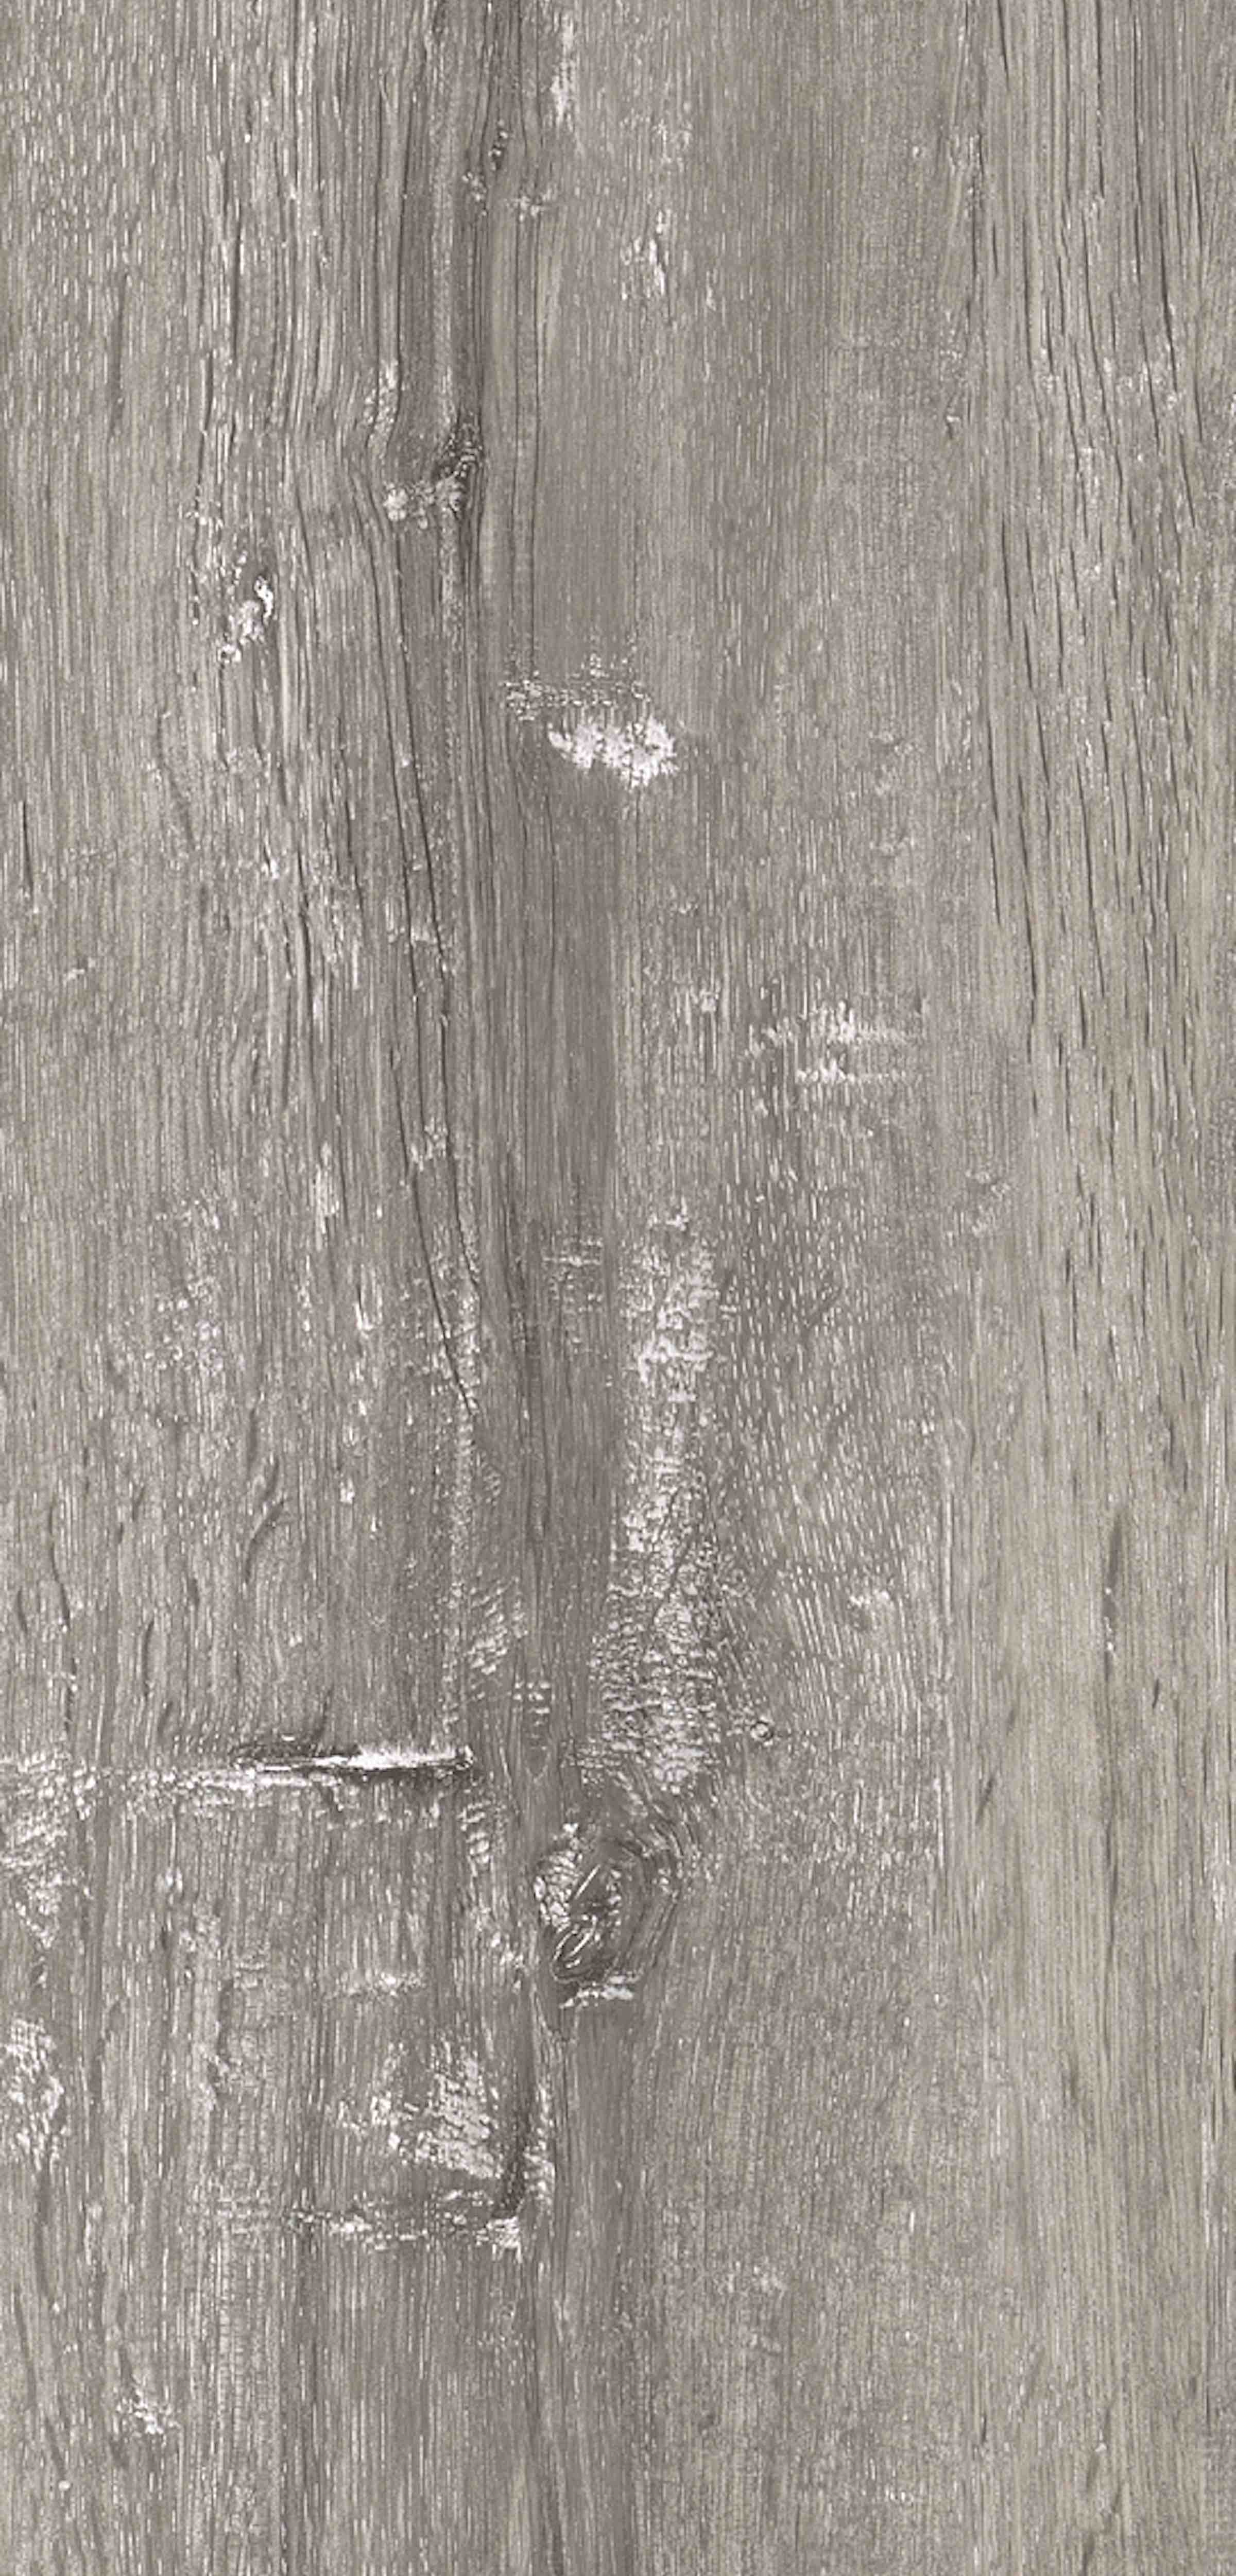 Rappórt | Grey Limed Oak, 2798 | Paragon Carpet Tiles | Commercial Carpet Tiles